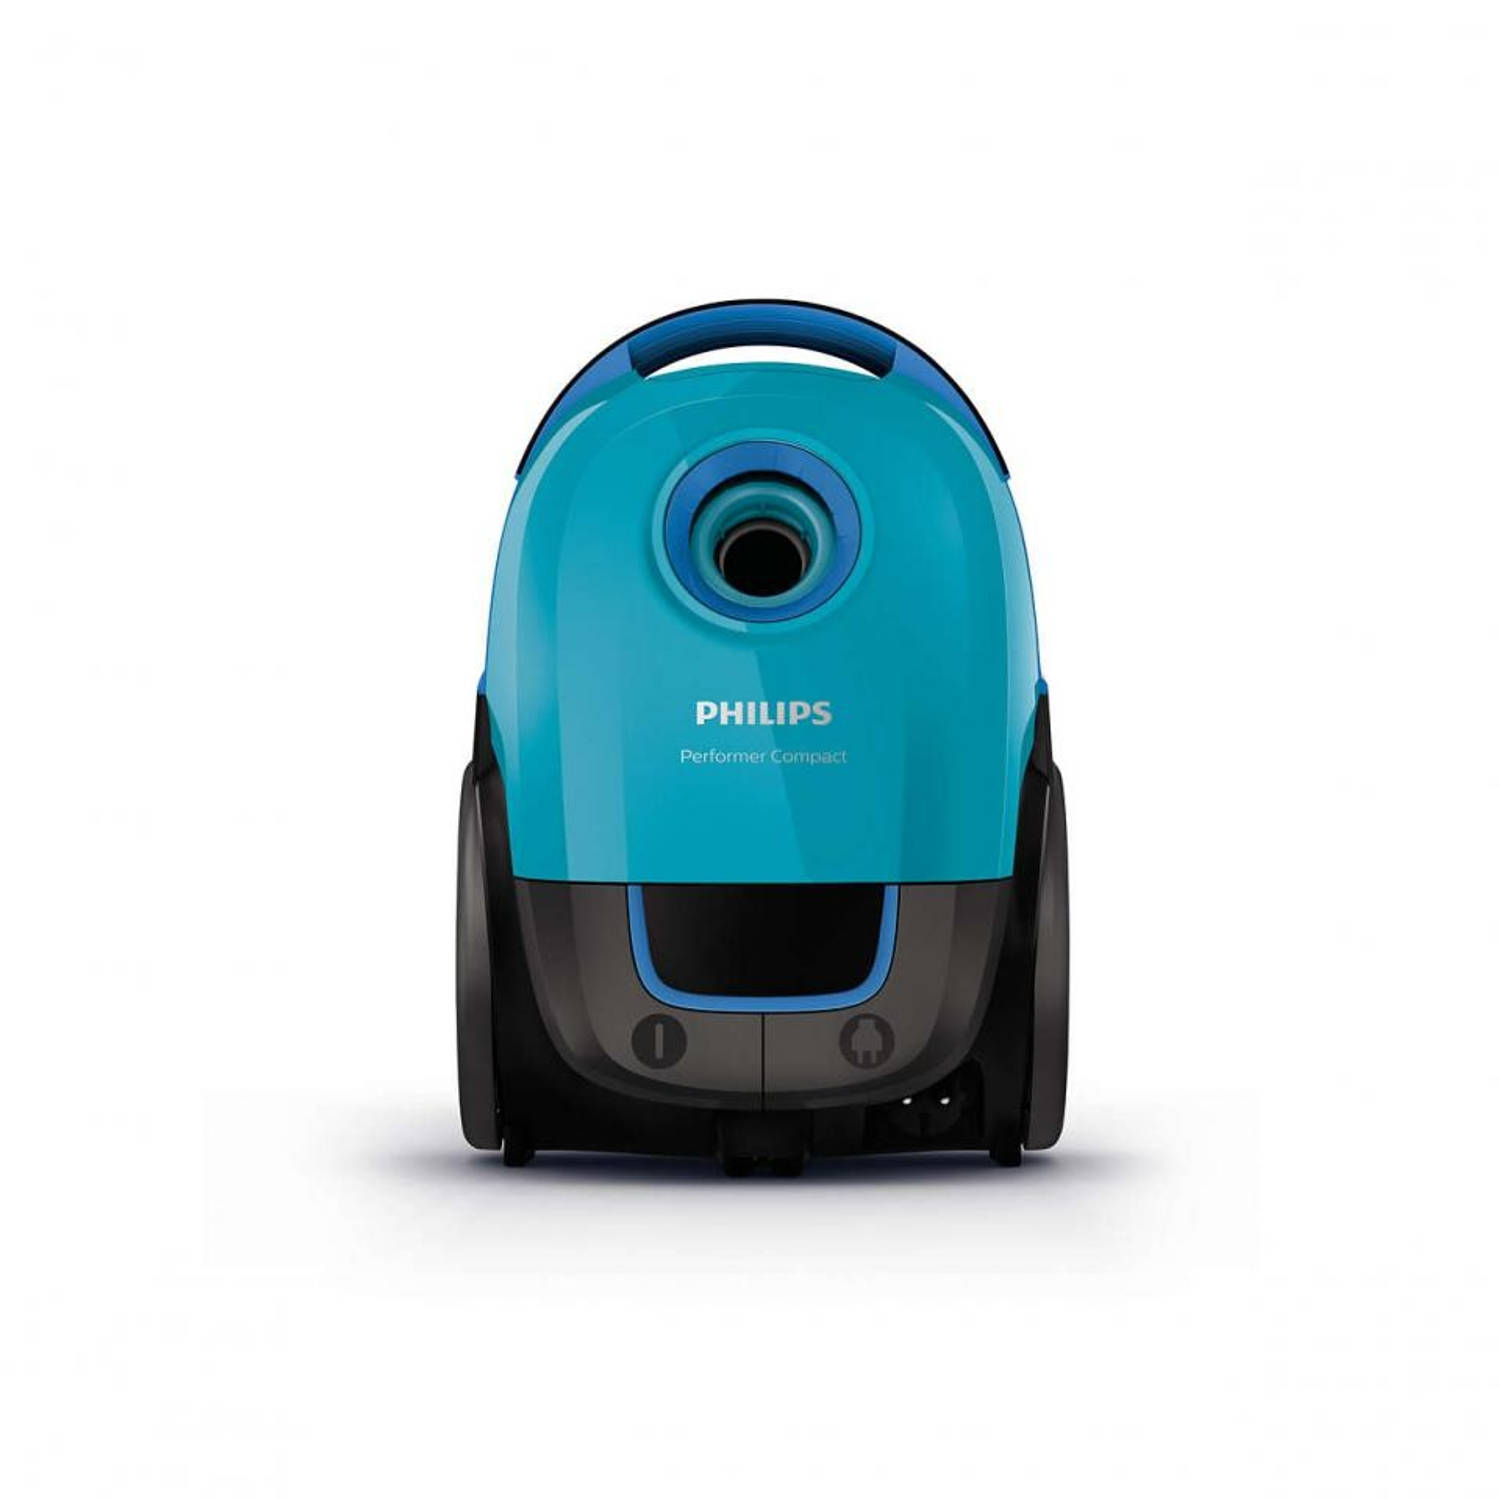 Insecten tellen media Uitrusten Philips stofzuiger Performer Compact FC8376/08 - lichtblauw | Blokker